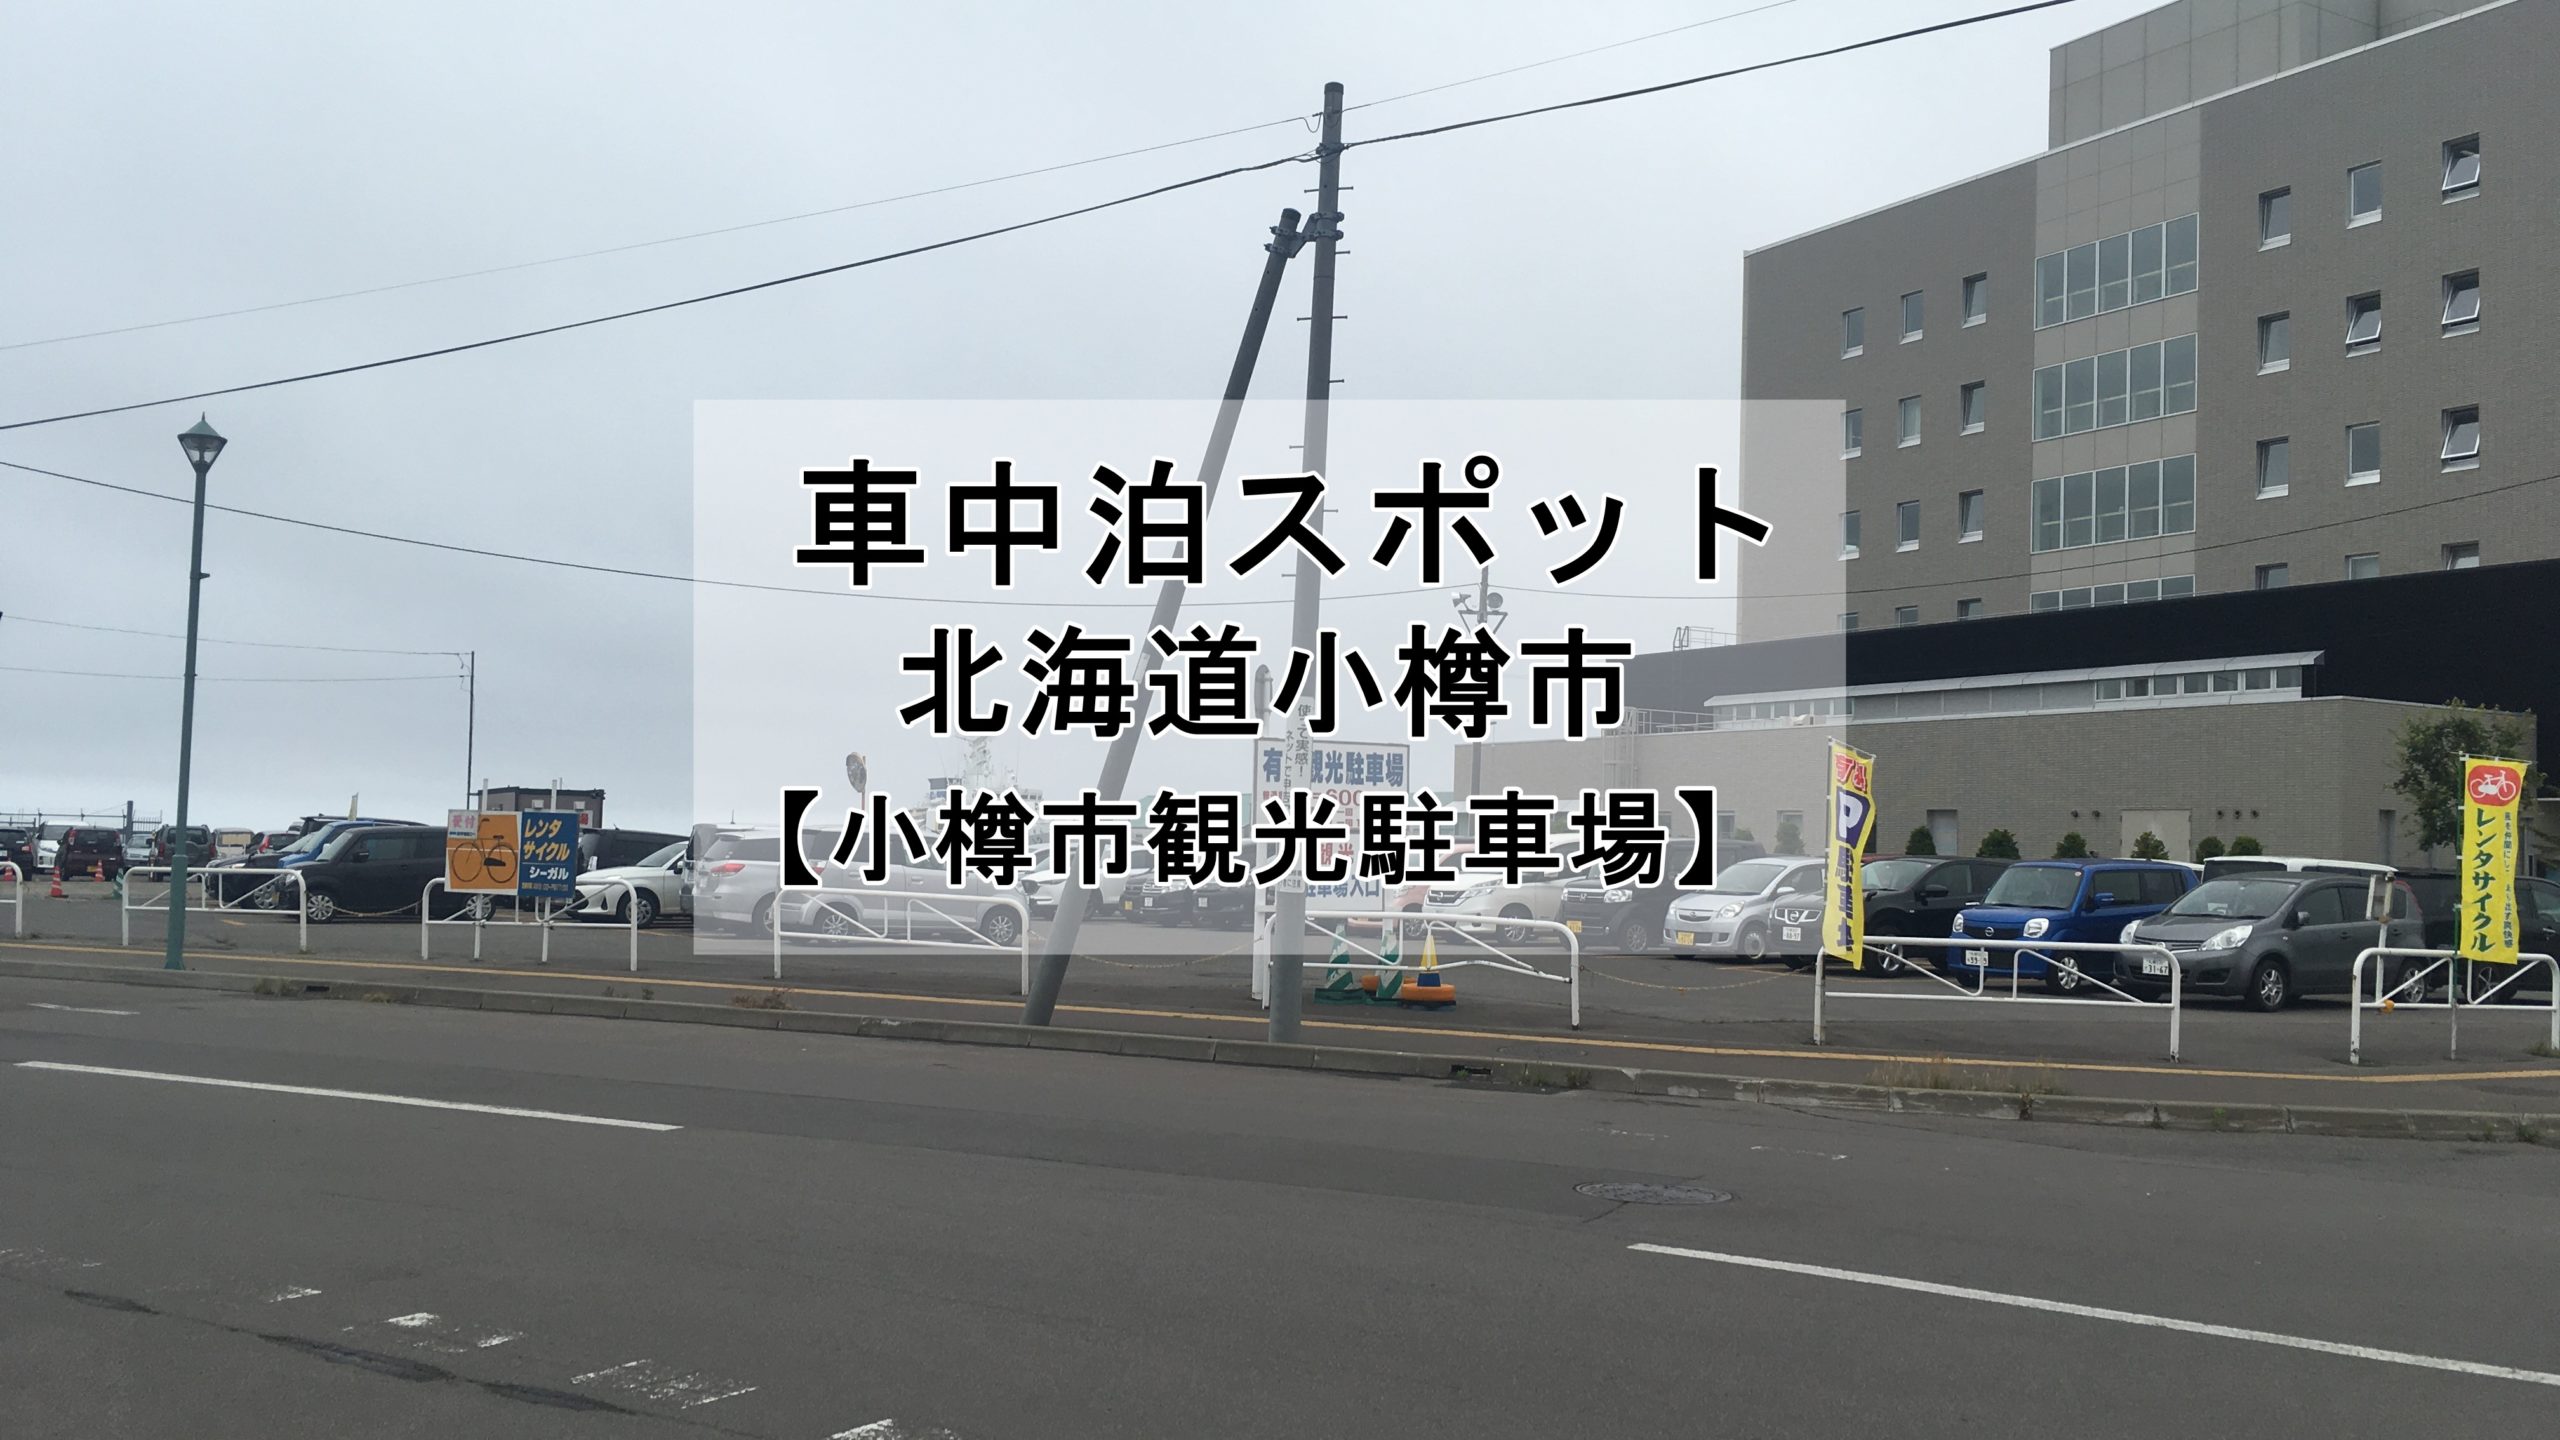 小樽観光にオススメ 小樽市観光駐車場で600円で車中泊ができます 車中泊女子 初心者向けバンライフブログ